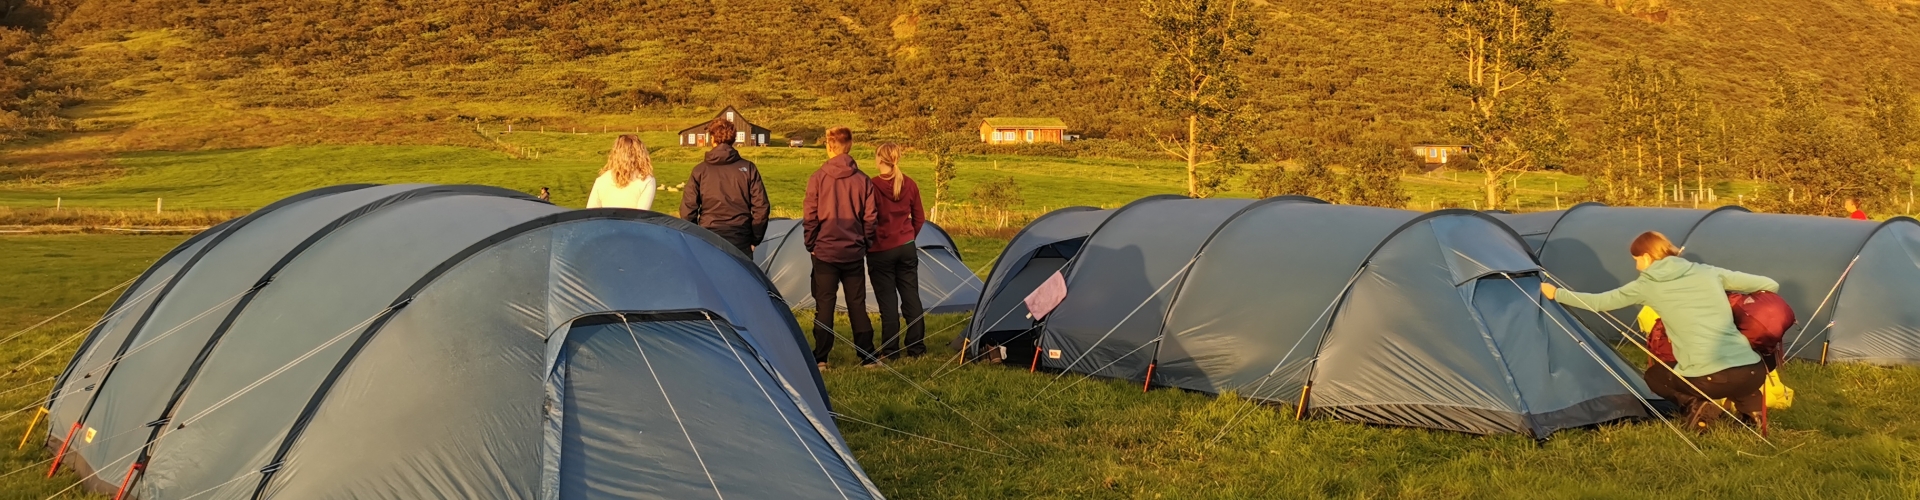 Fjallraven tenten in IJsland